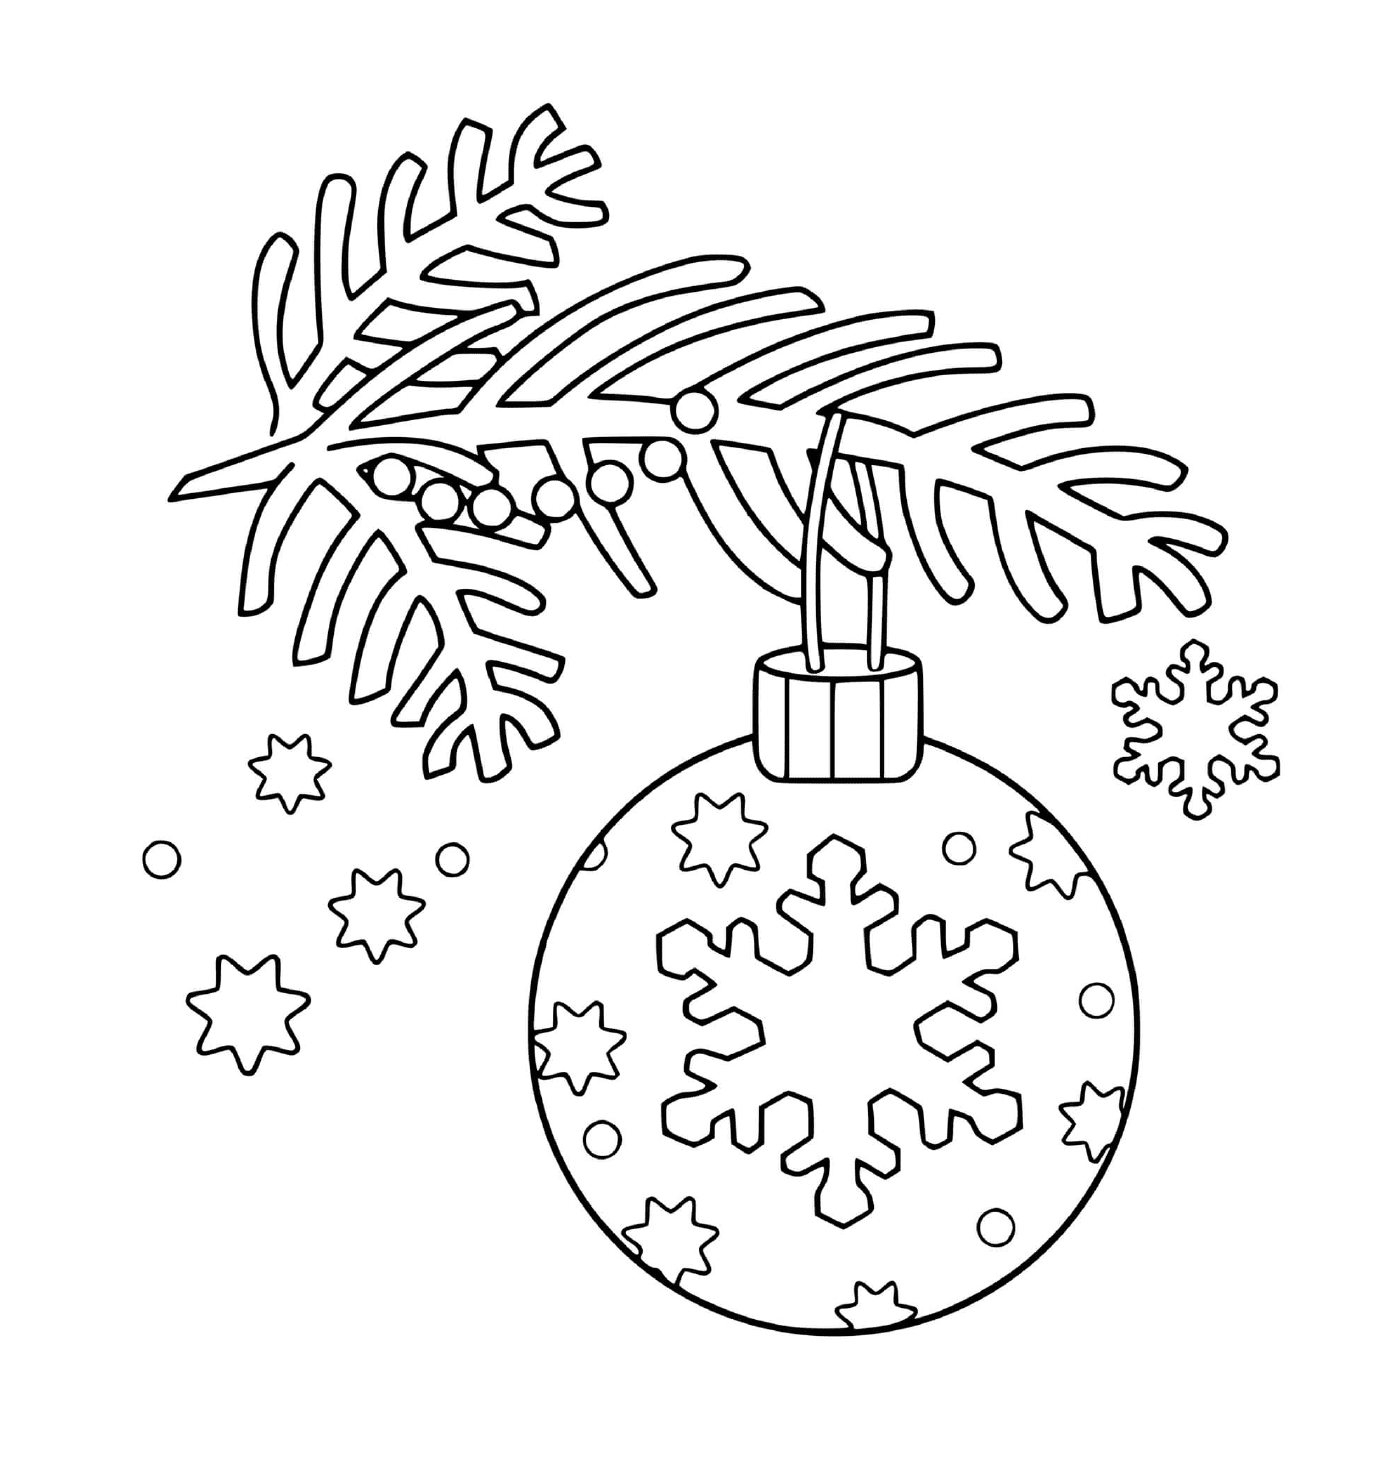  Ein Weihnachtsball, der an einem Baum hängt 